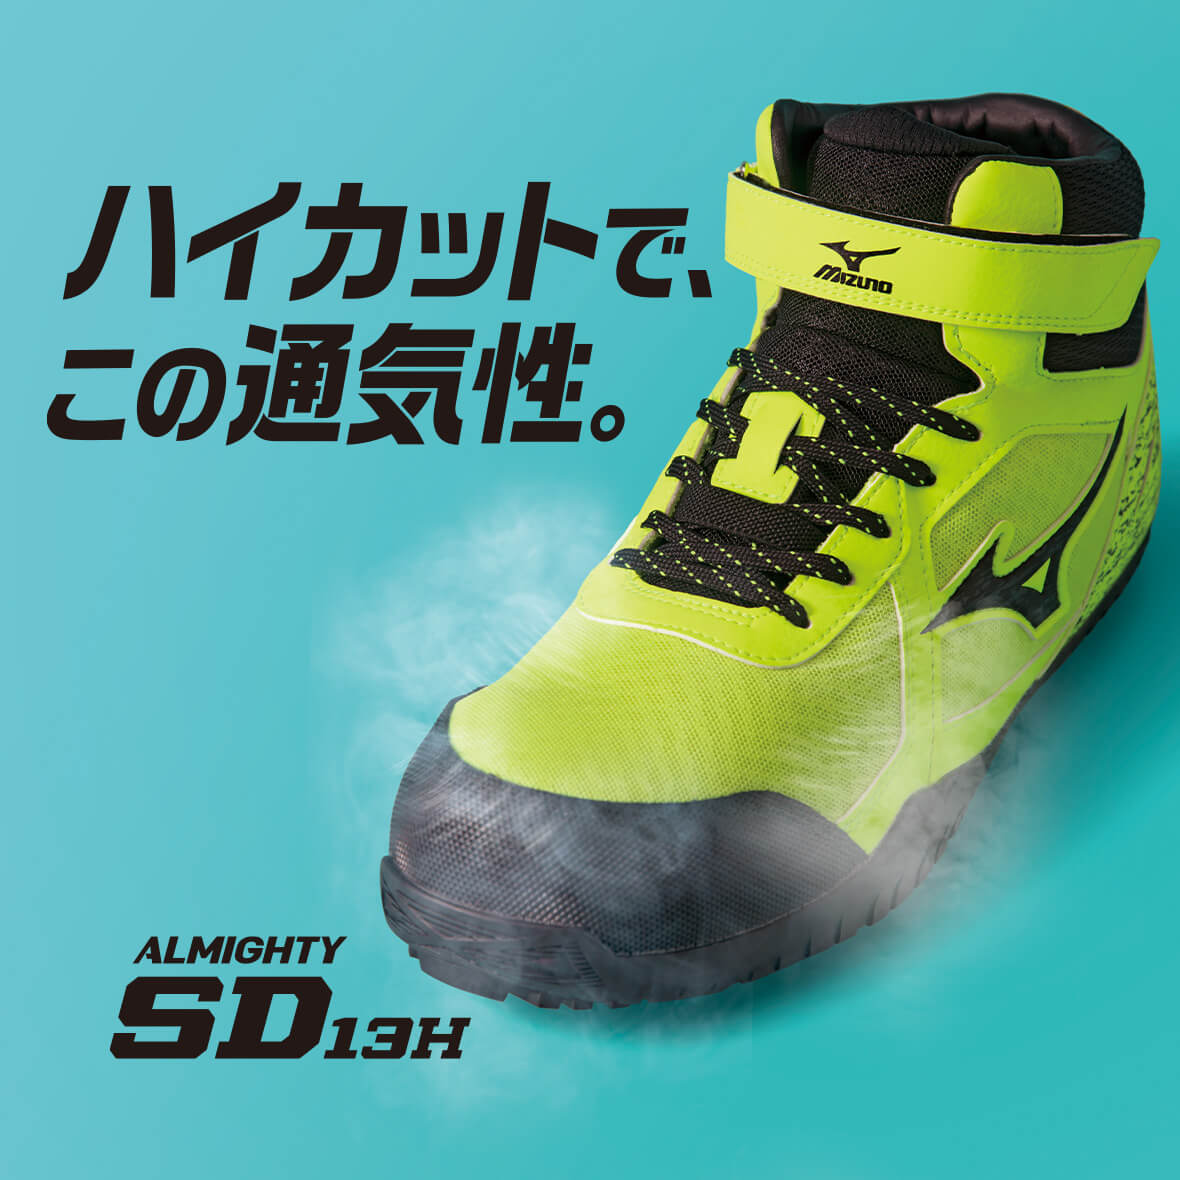 ミズノ安全靴 オールマイティ SDⅡ13H 26.0cm